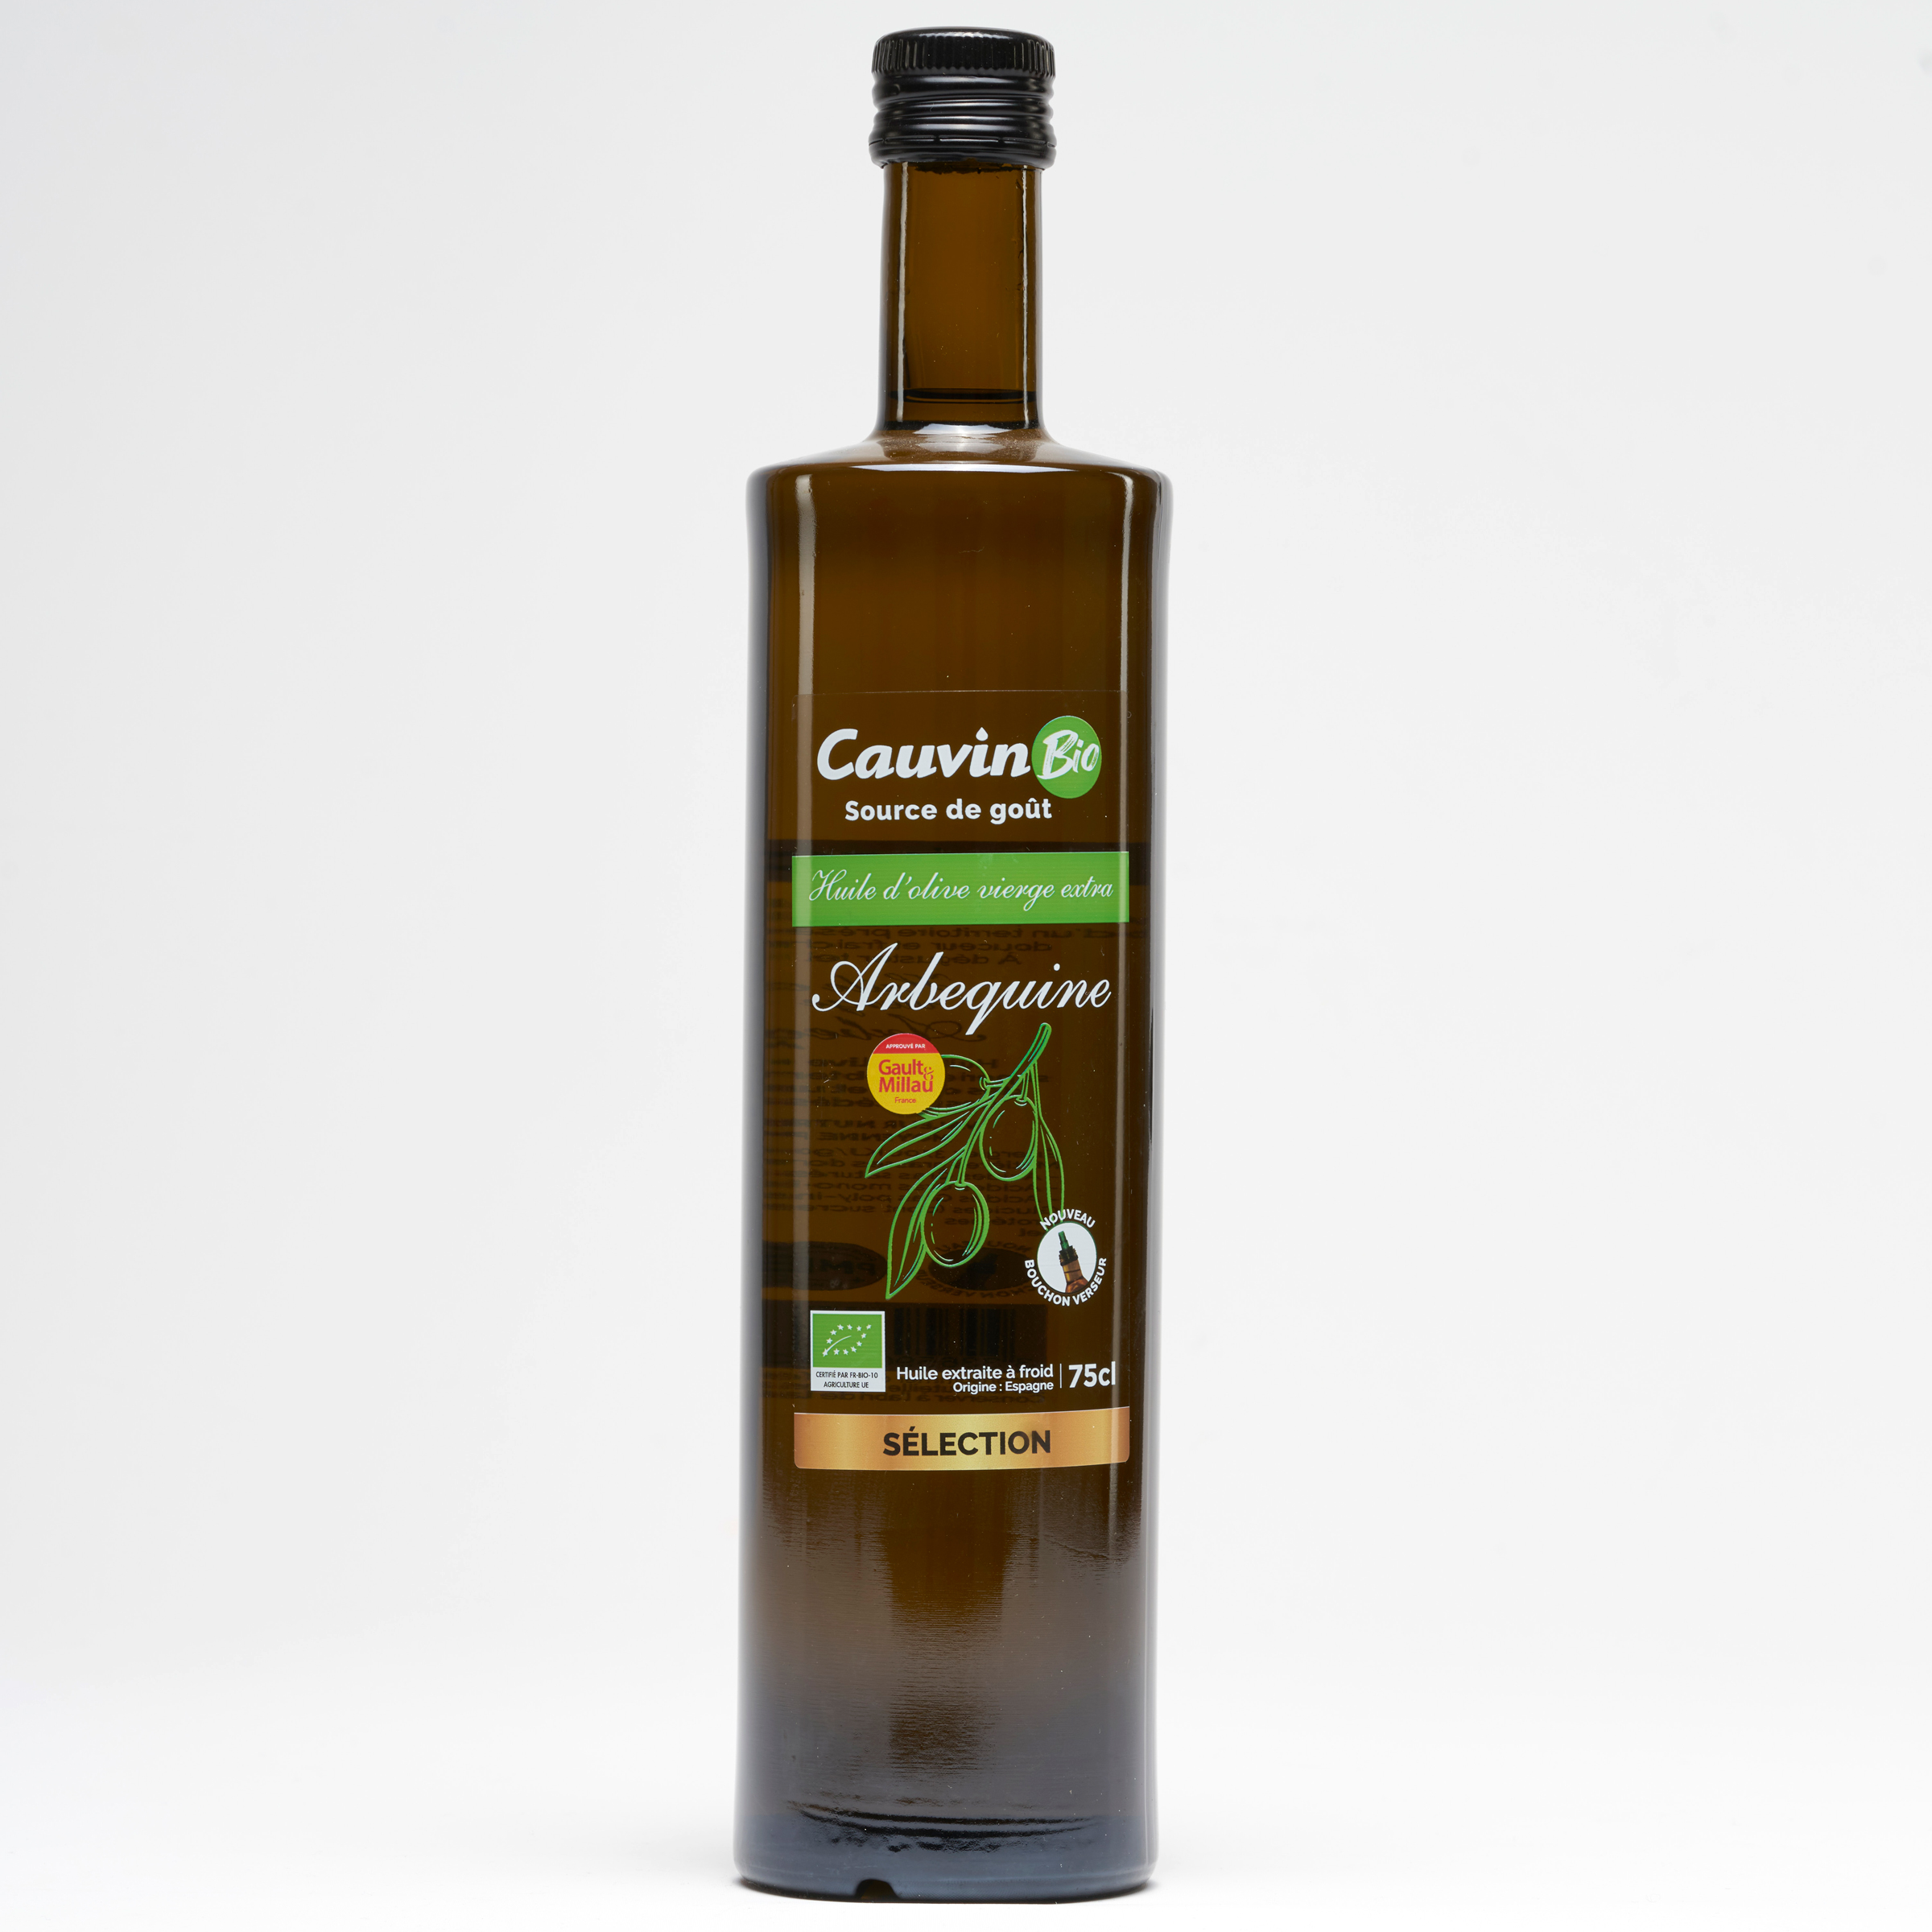 Cauvin bio Huile d’olive vierge extra Aberquine 